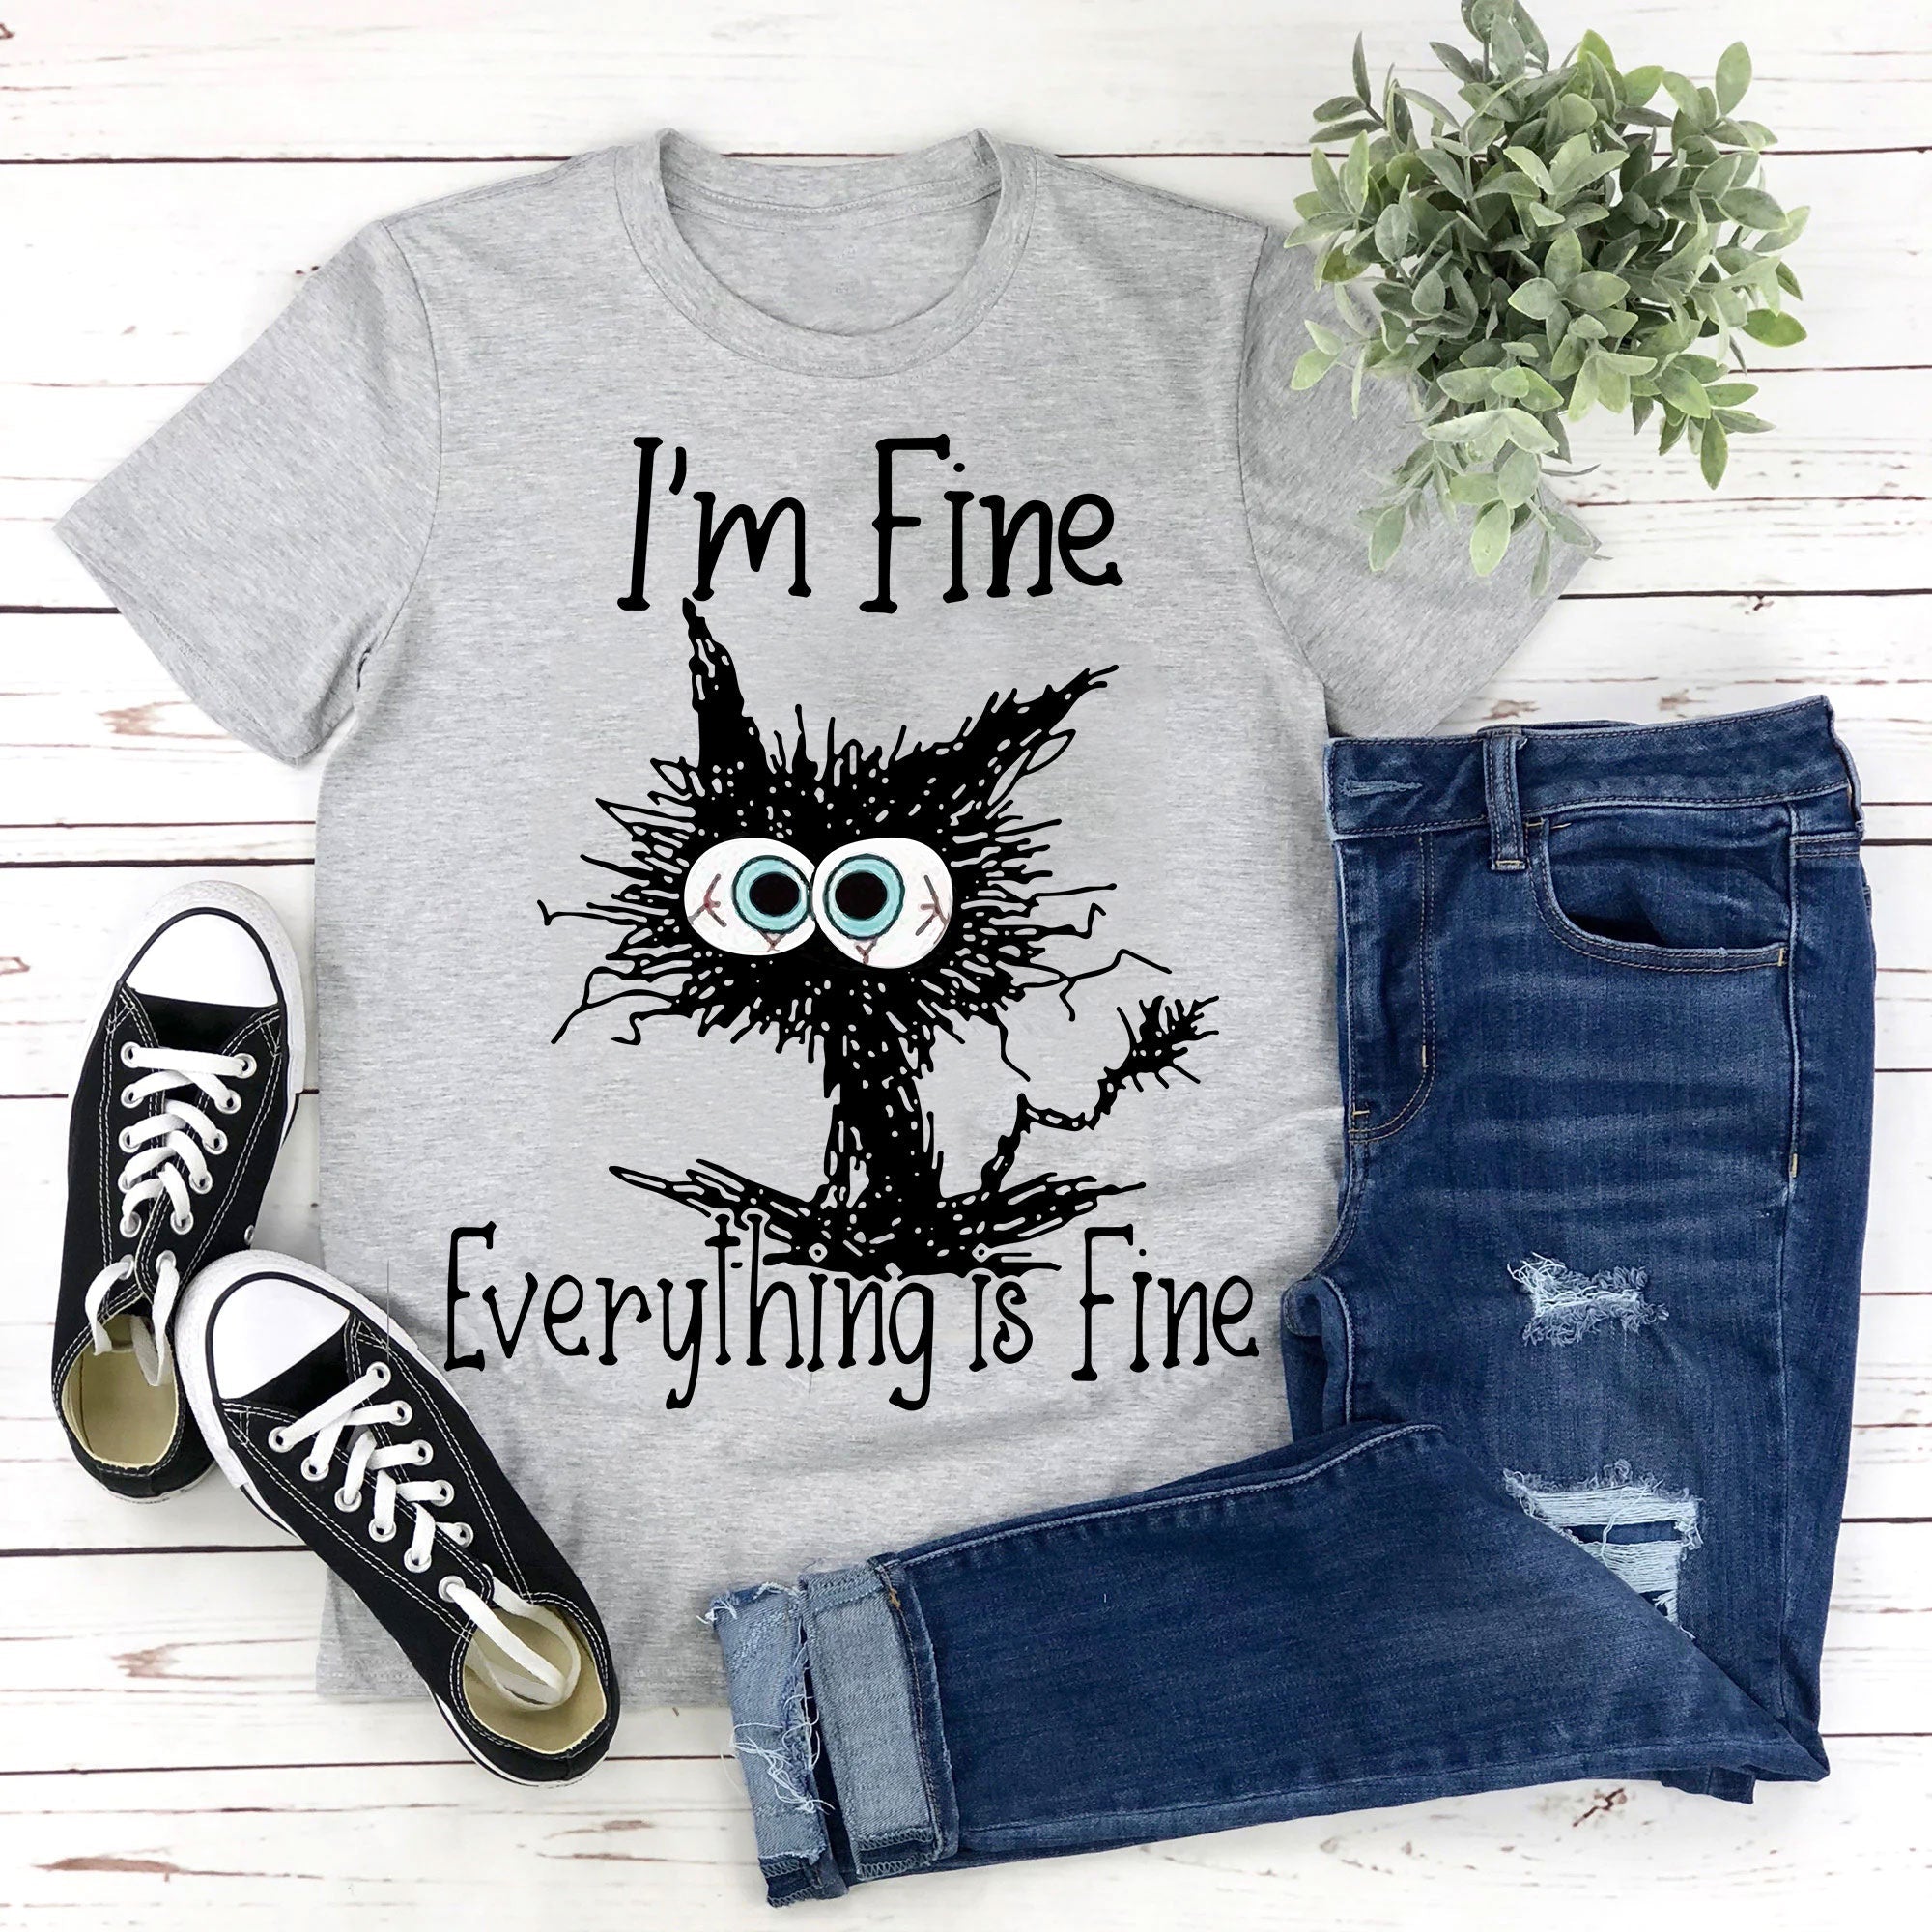 Je vais bien, tout va bien, t-shirt avec slogan imprimé chat pour femmes